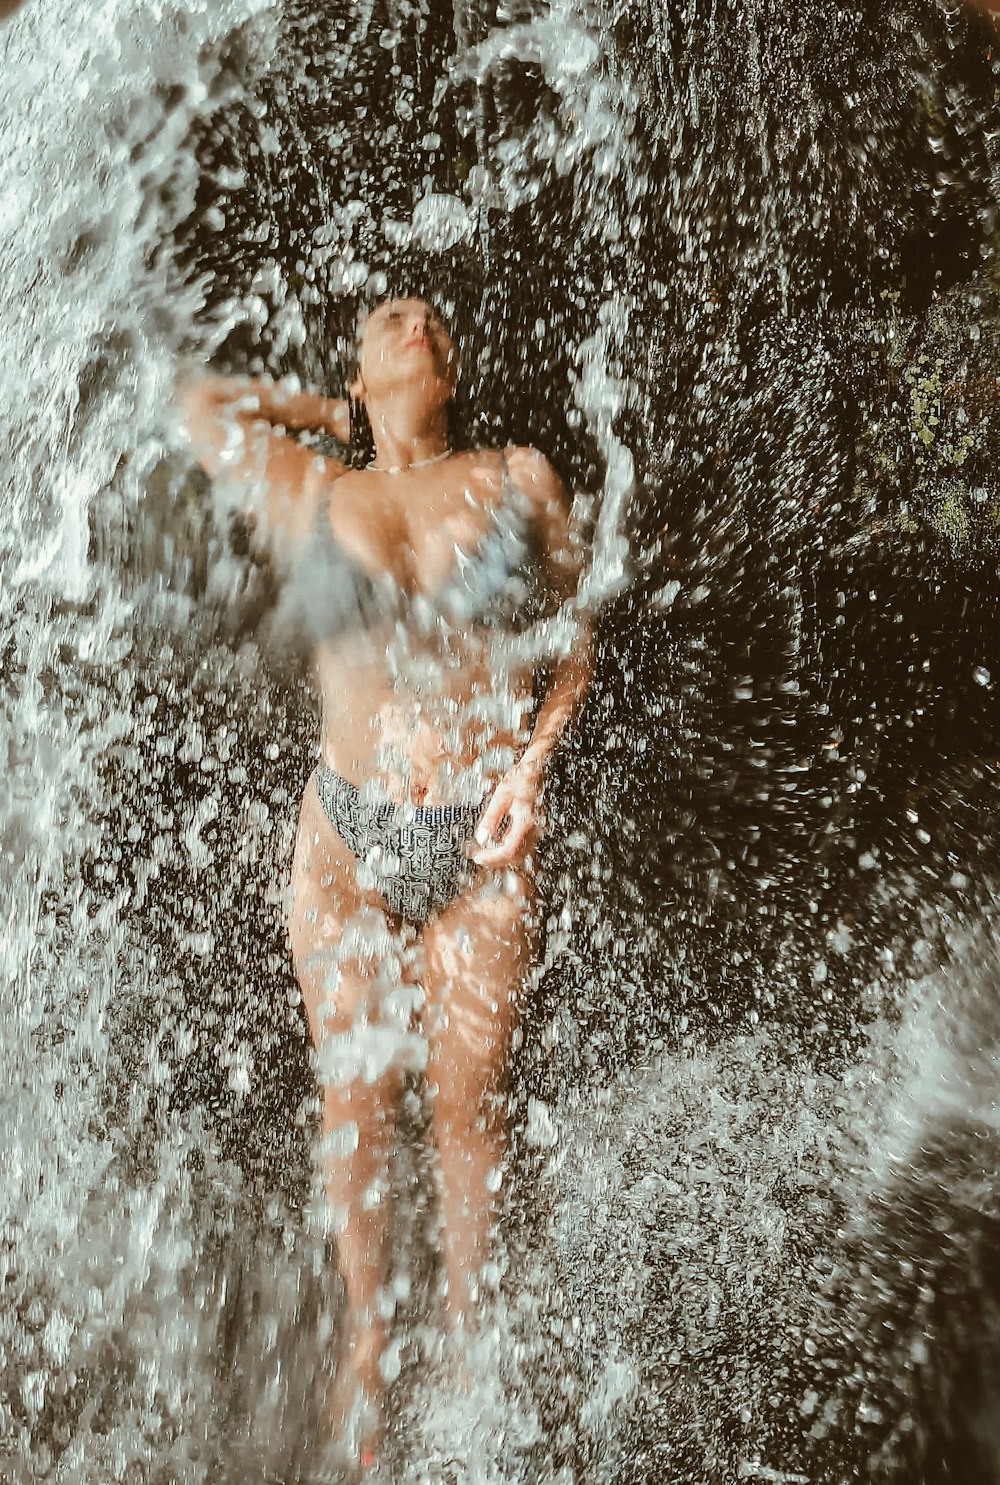 a woman in a bikini standing in the water